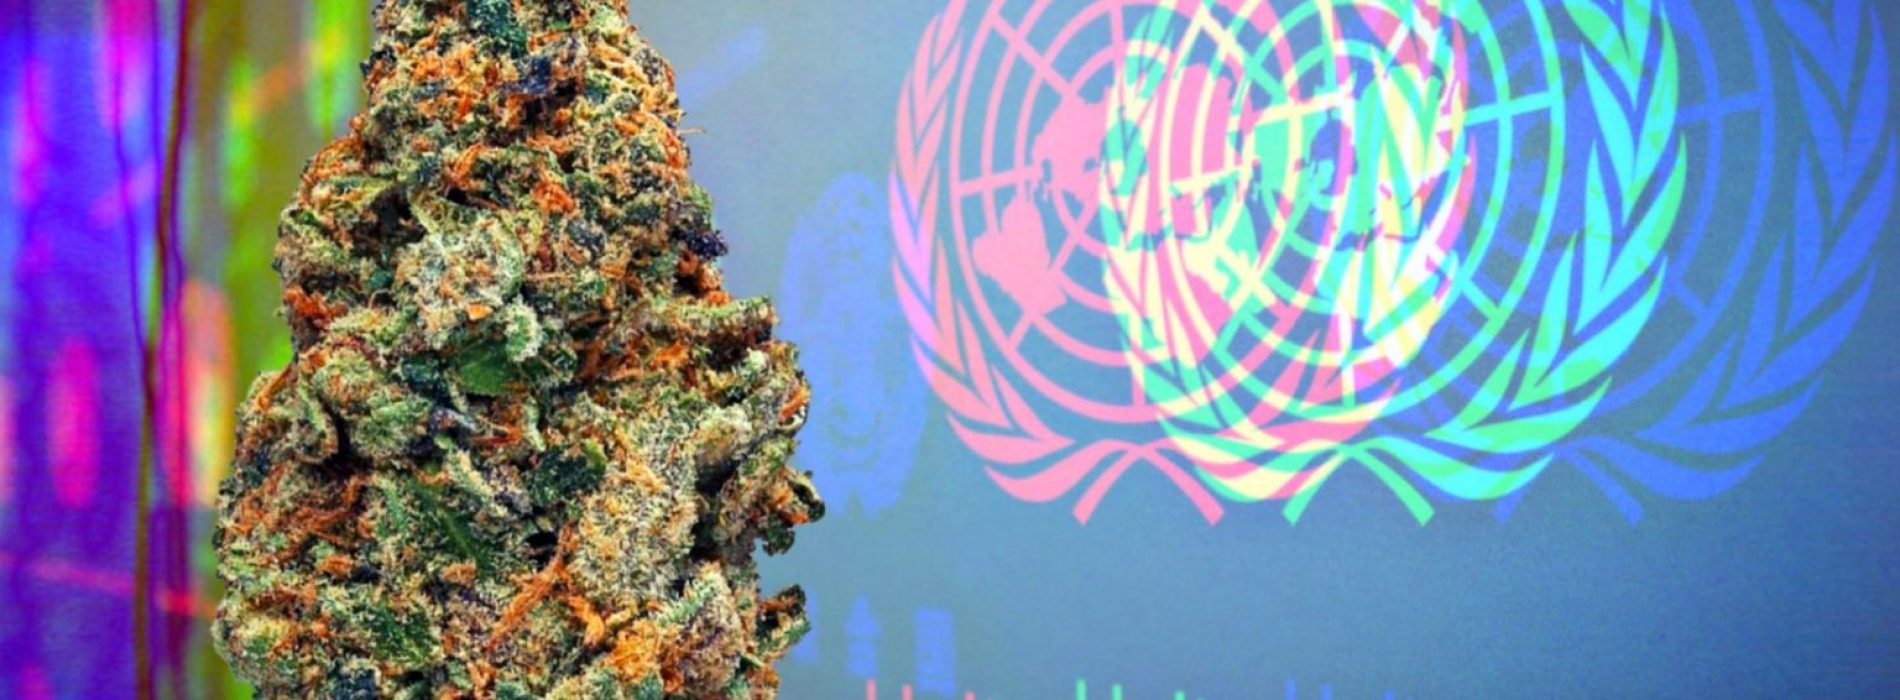 De Verenigde Naties erkennen officieel cannabis als medicijn in historische stemming